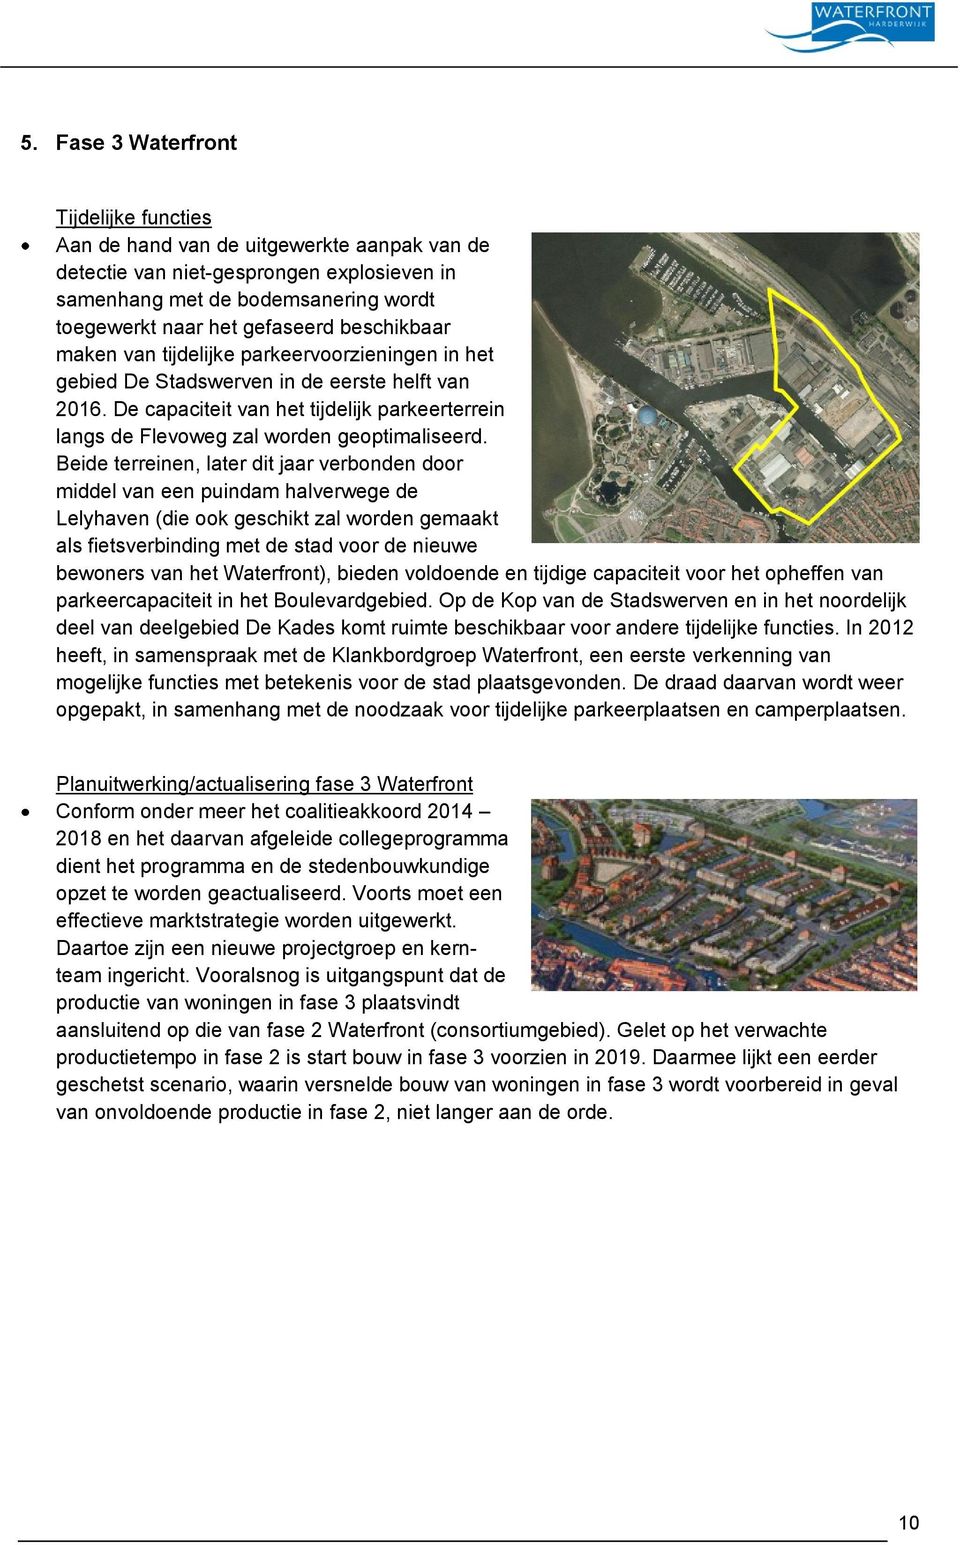 De capaciteit van het tijdelijk parkeerterrein langs de Flevoweg zal worden geoptimaliseerd.